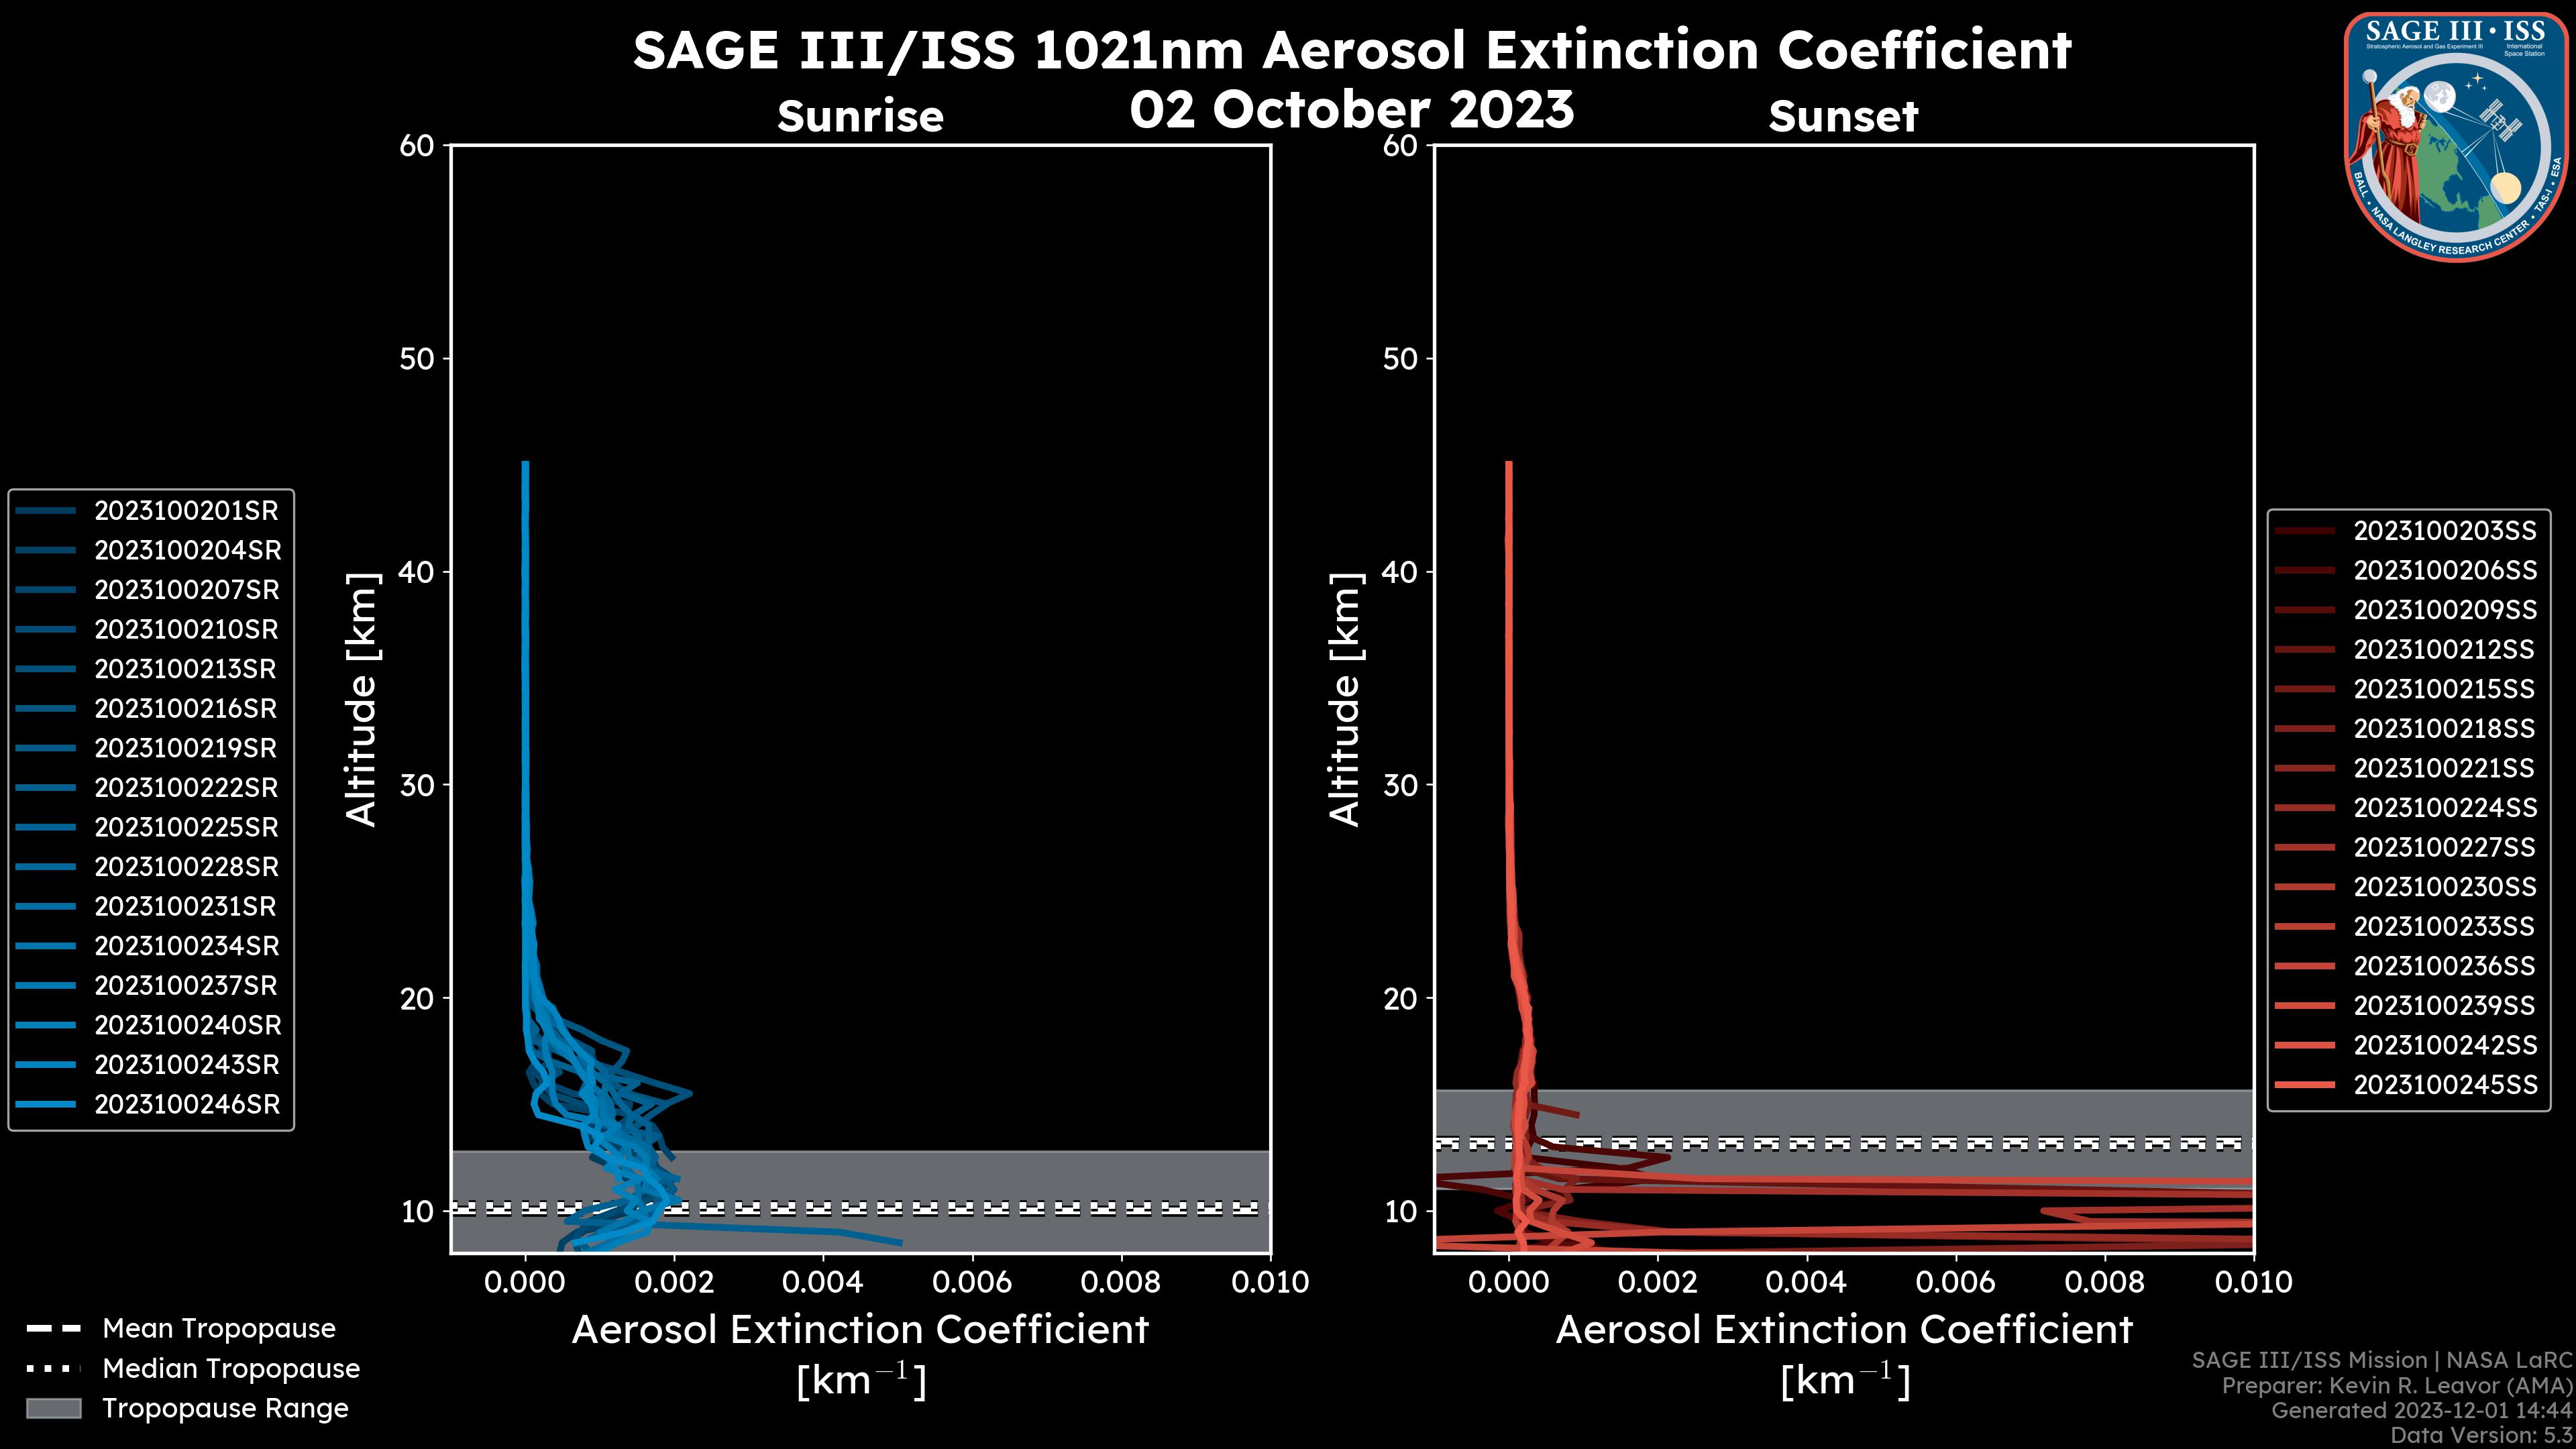 1021nm Aerosol Extinction Coefficient